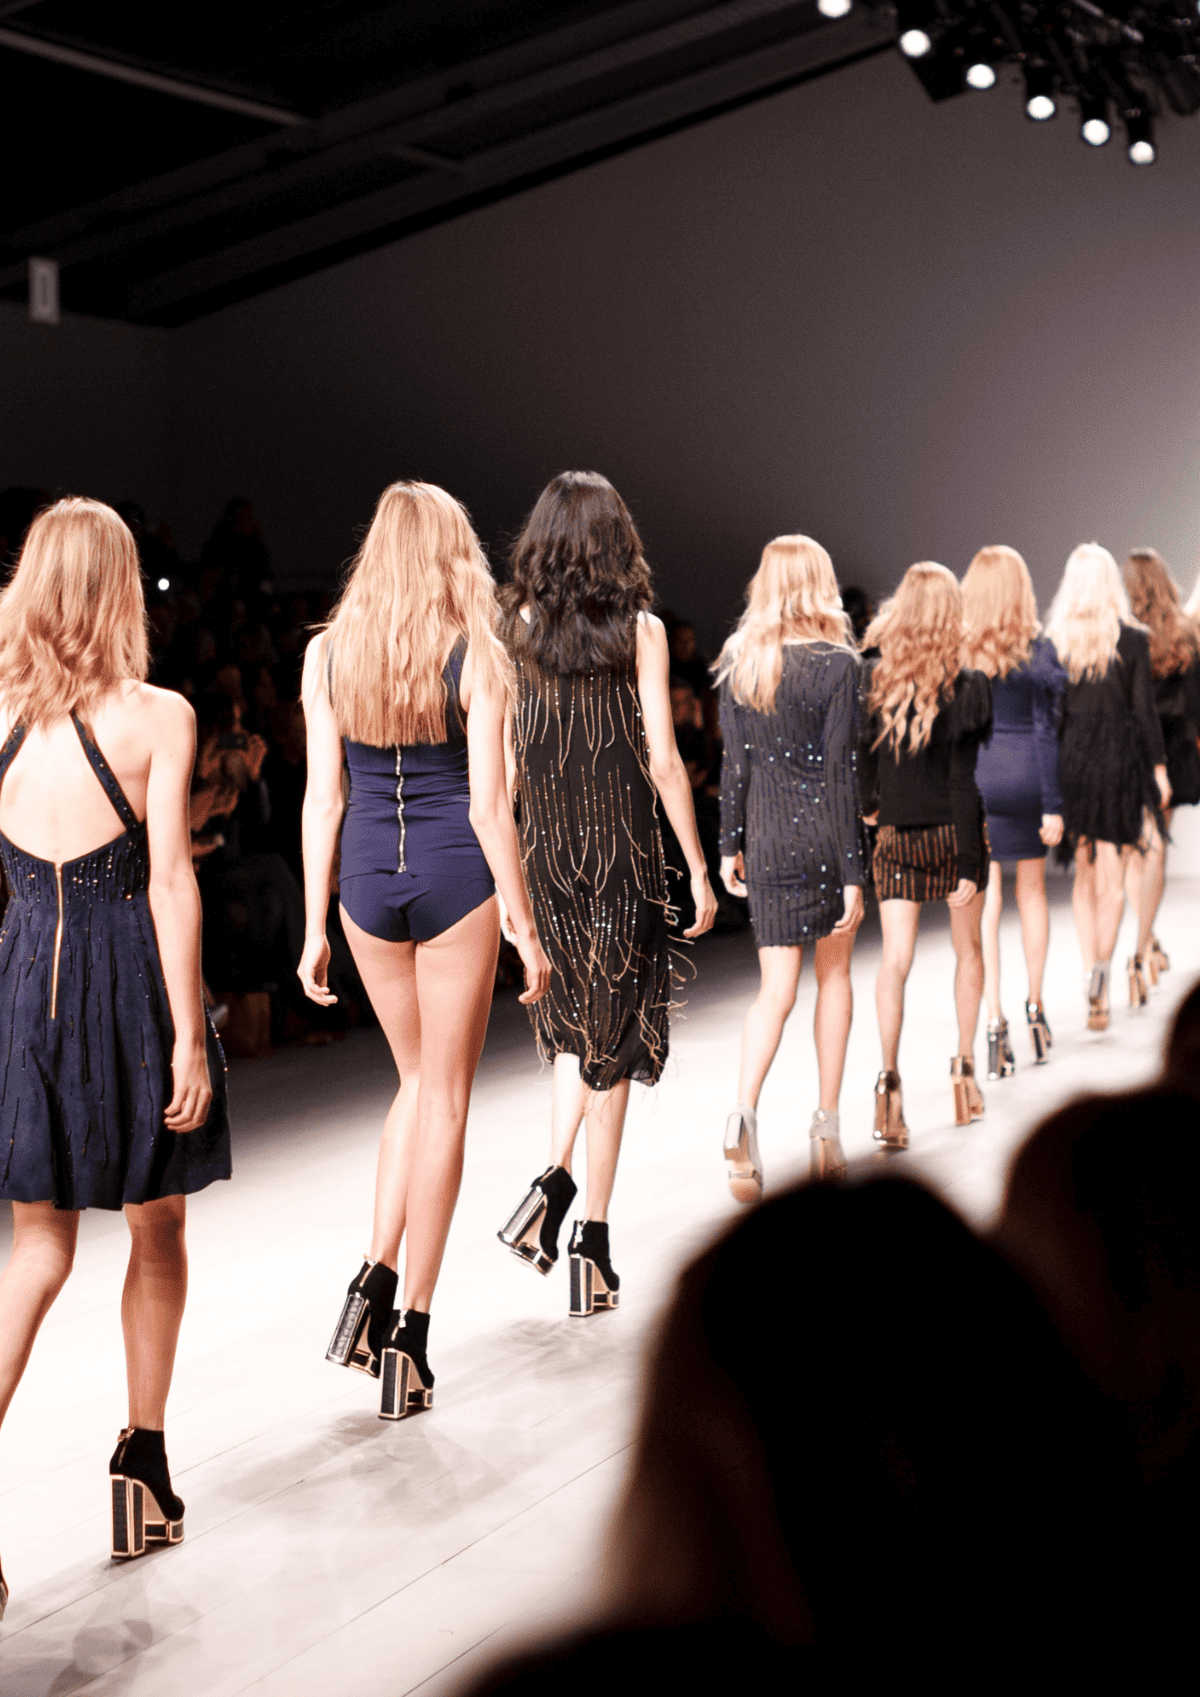 Victoria Secret models walking down a runway.